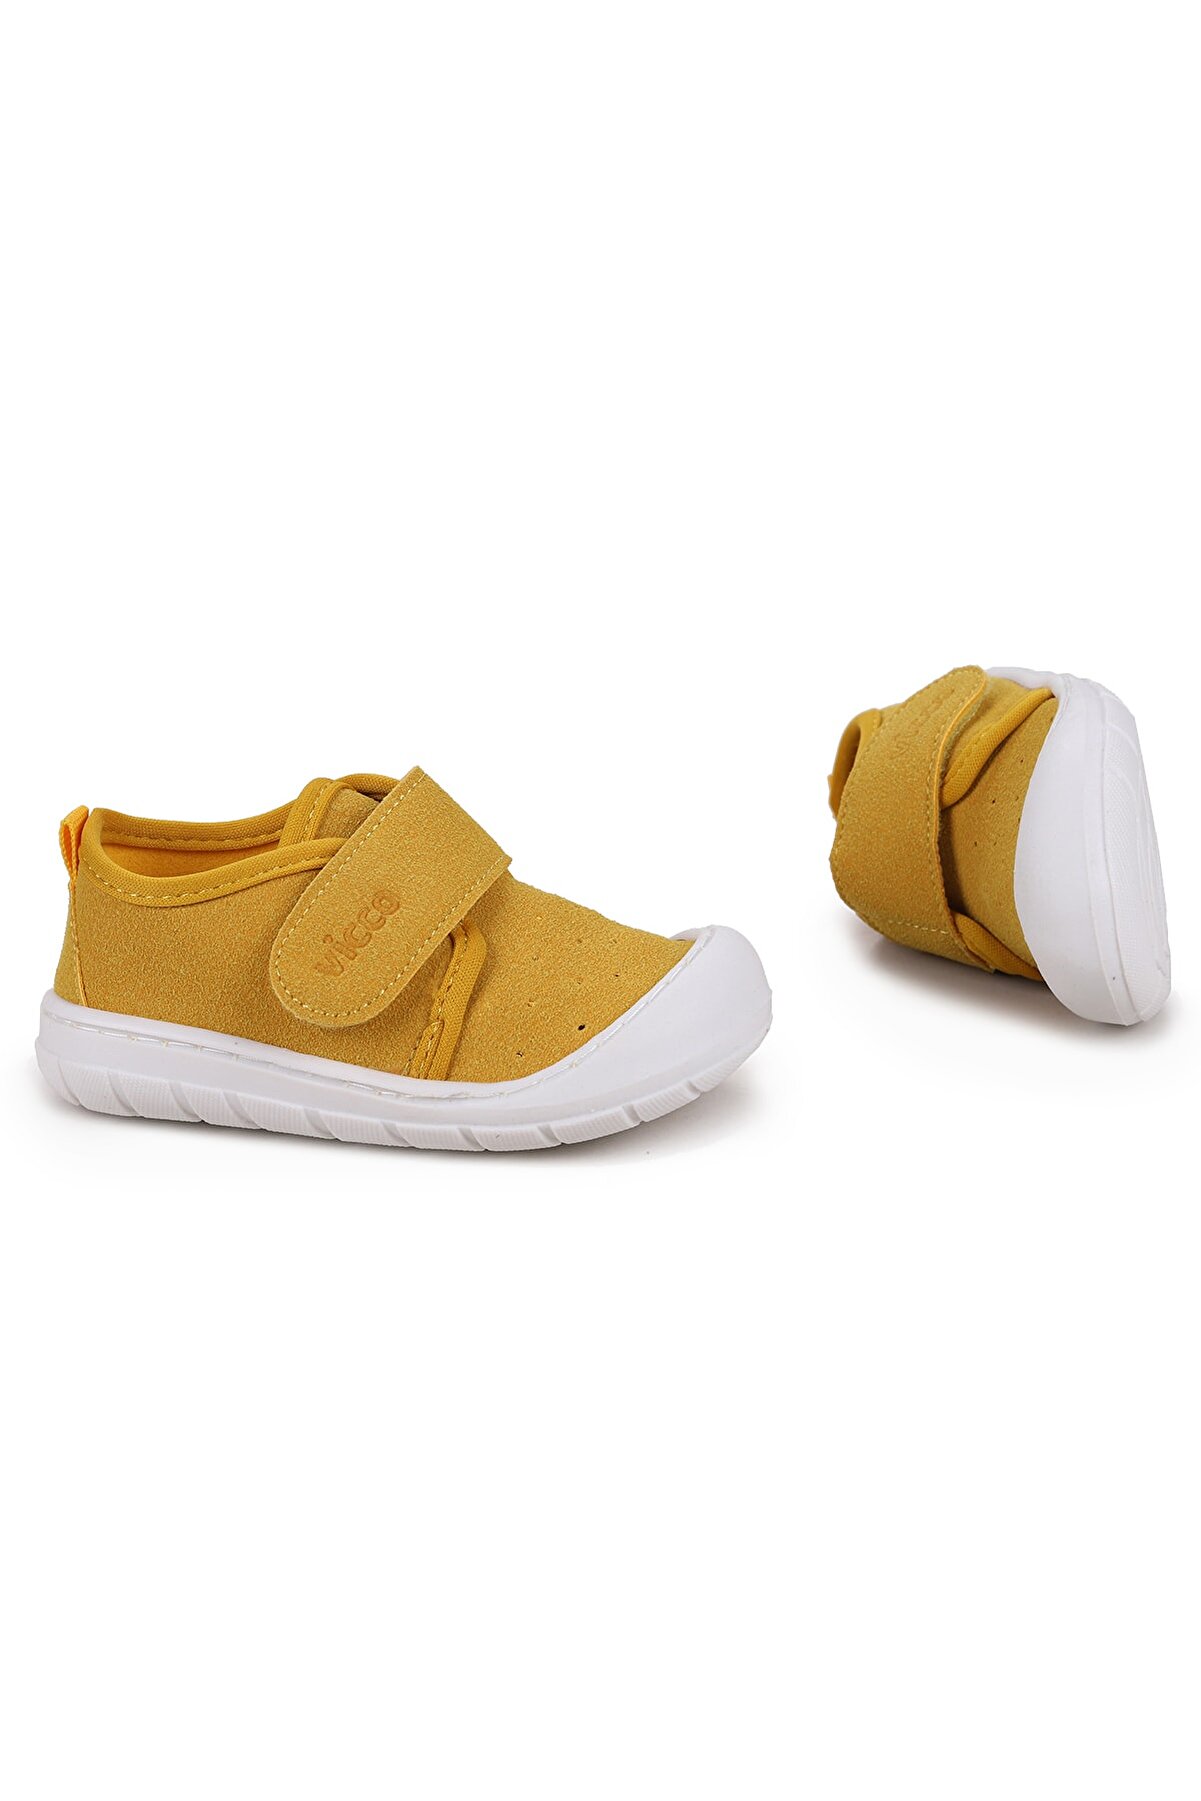 Vicco Sarı - 950.b21k.225 Anka Kız/erkek Bebe Spor Ayakkabı